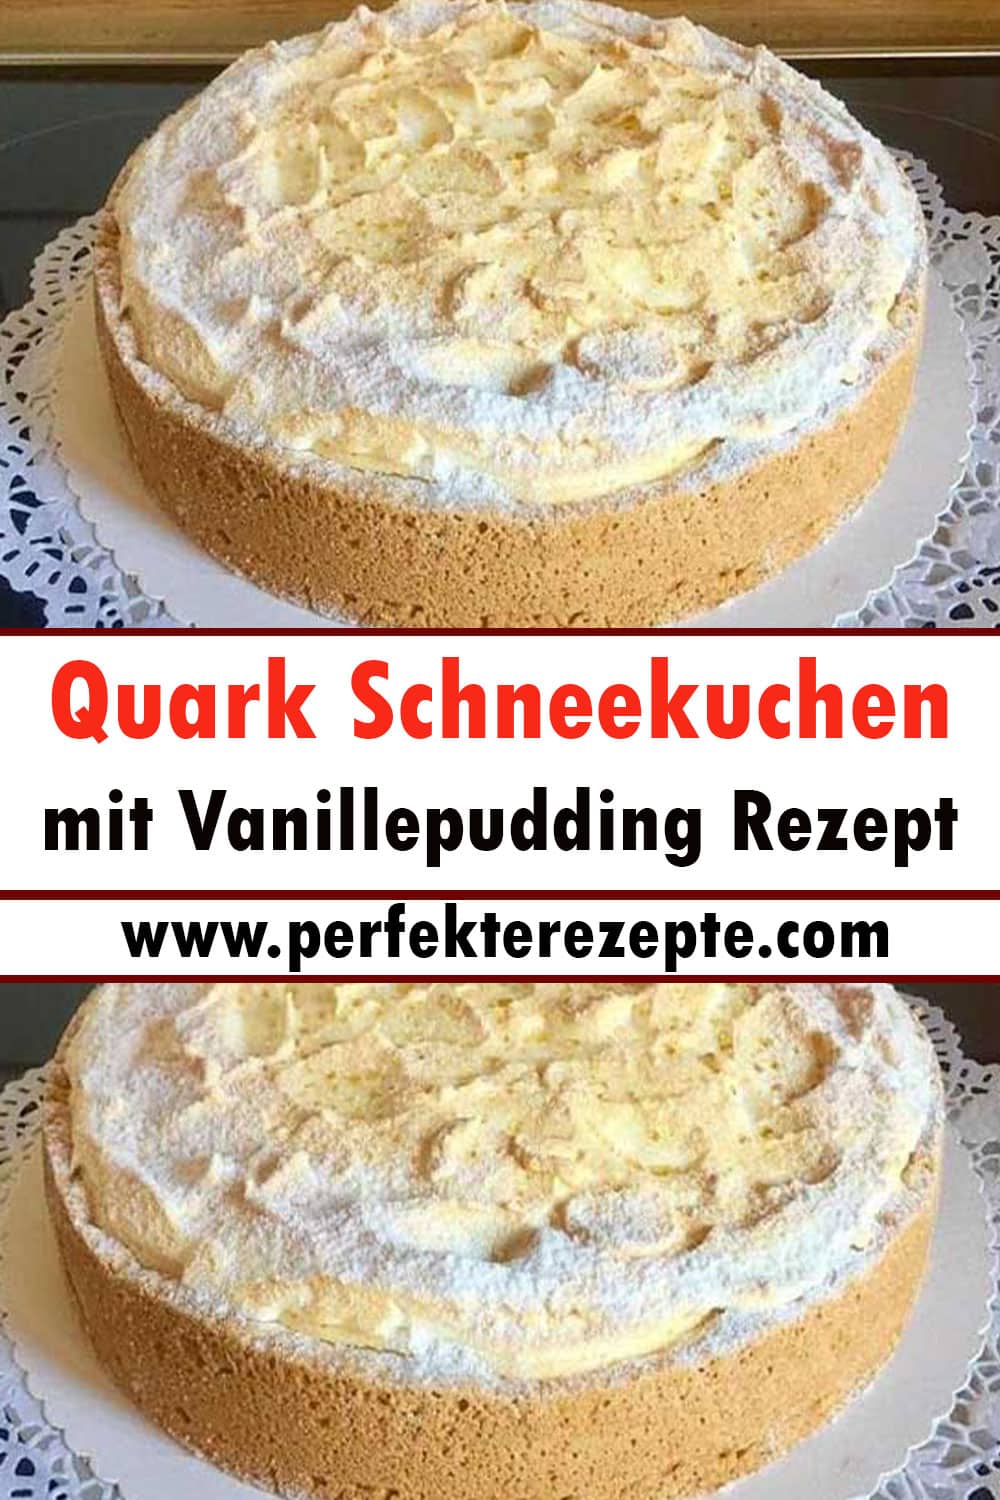 Quark Schneekuchen mit Vanillepudding Rezept